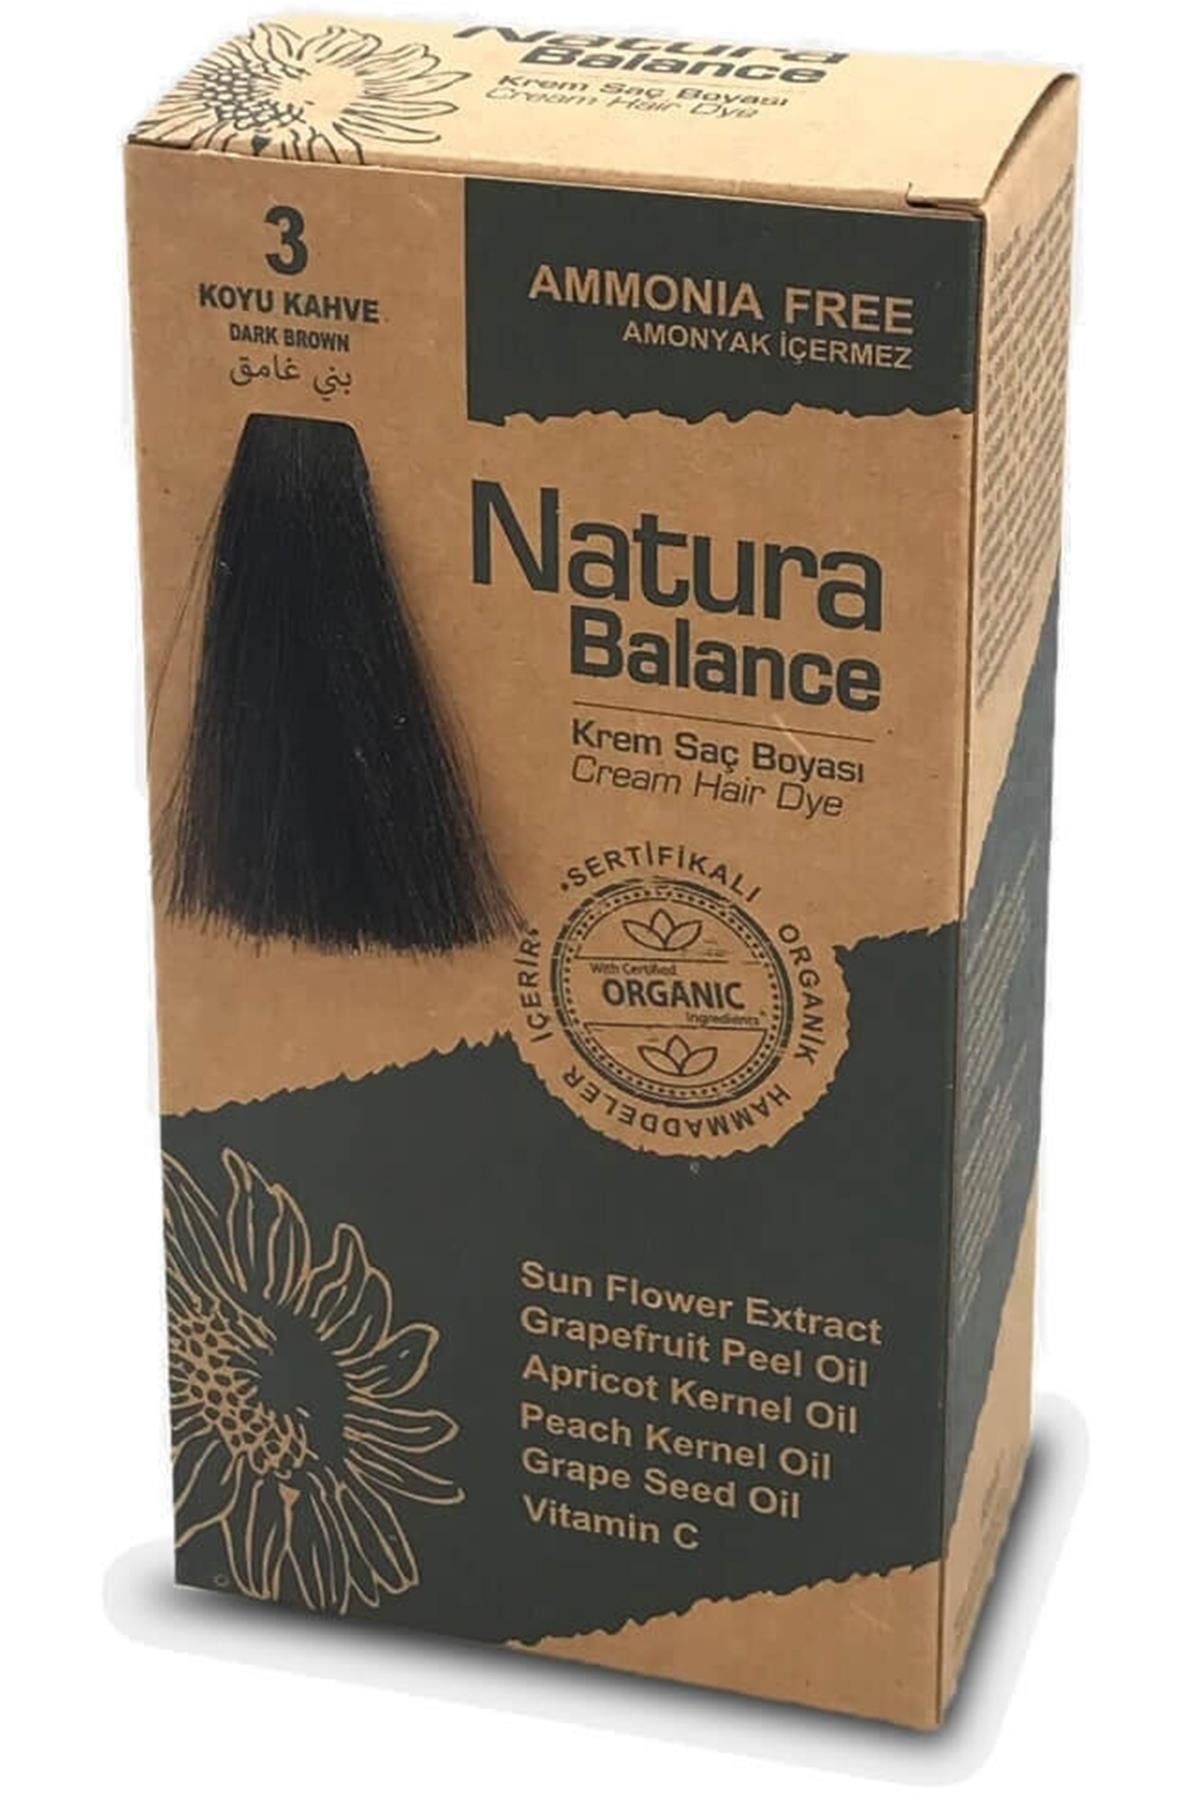 Natura Marka: Balance Kit Saç Boyası Koyu Kahve 3 Kategori: Saç Boyası